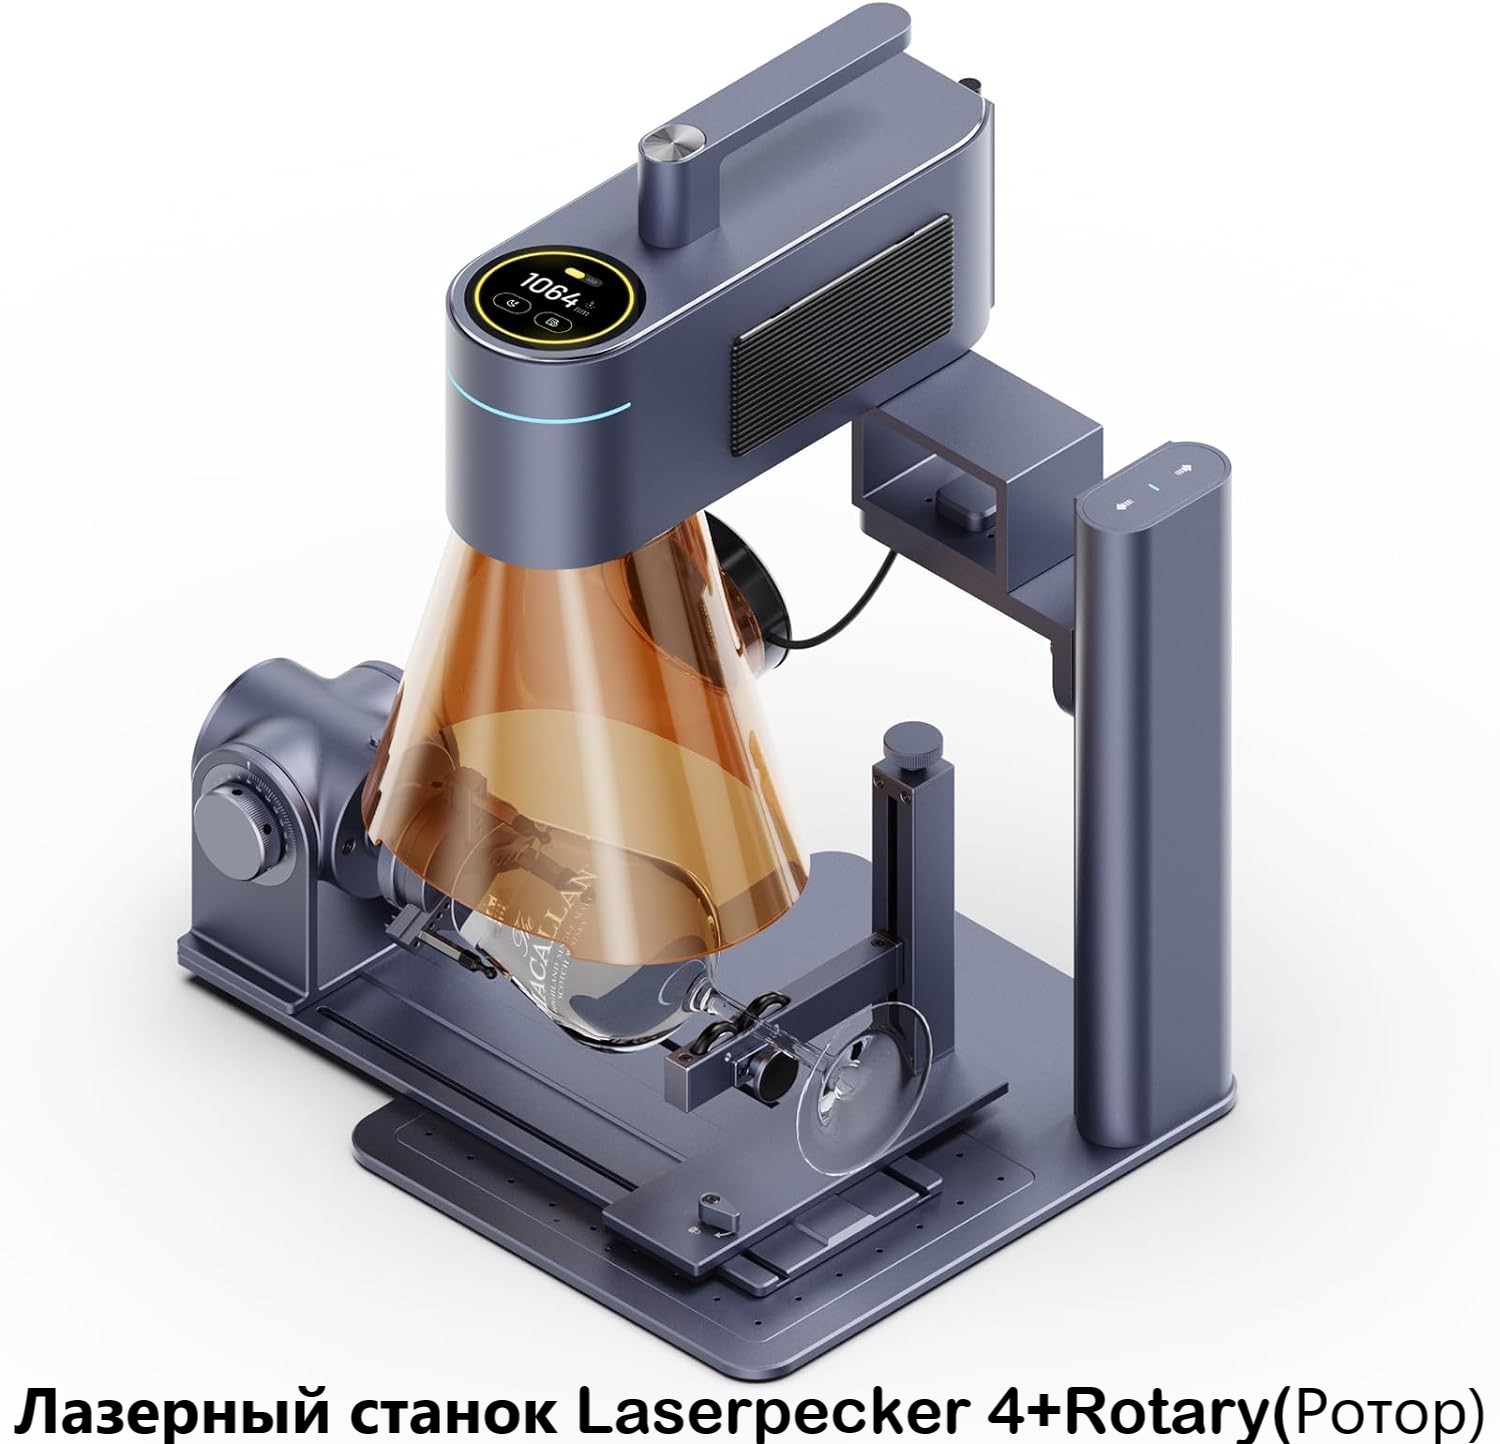 Станок для лазерной гравировки, маркировки, резки LaserPecker 4 + Rotary Extension (ротор) станок для лазерной гравировки маркировки резки laserpecker 4 ultimate